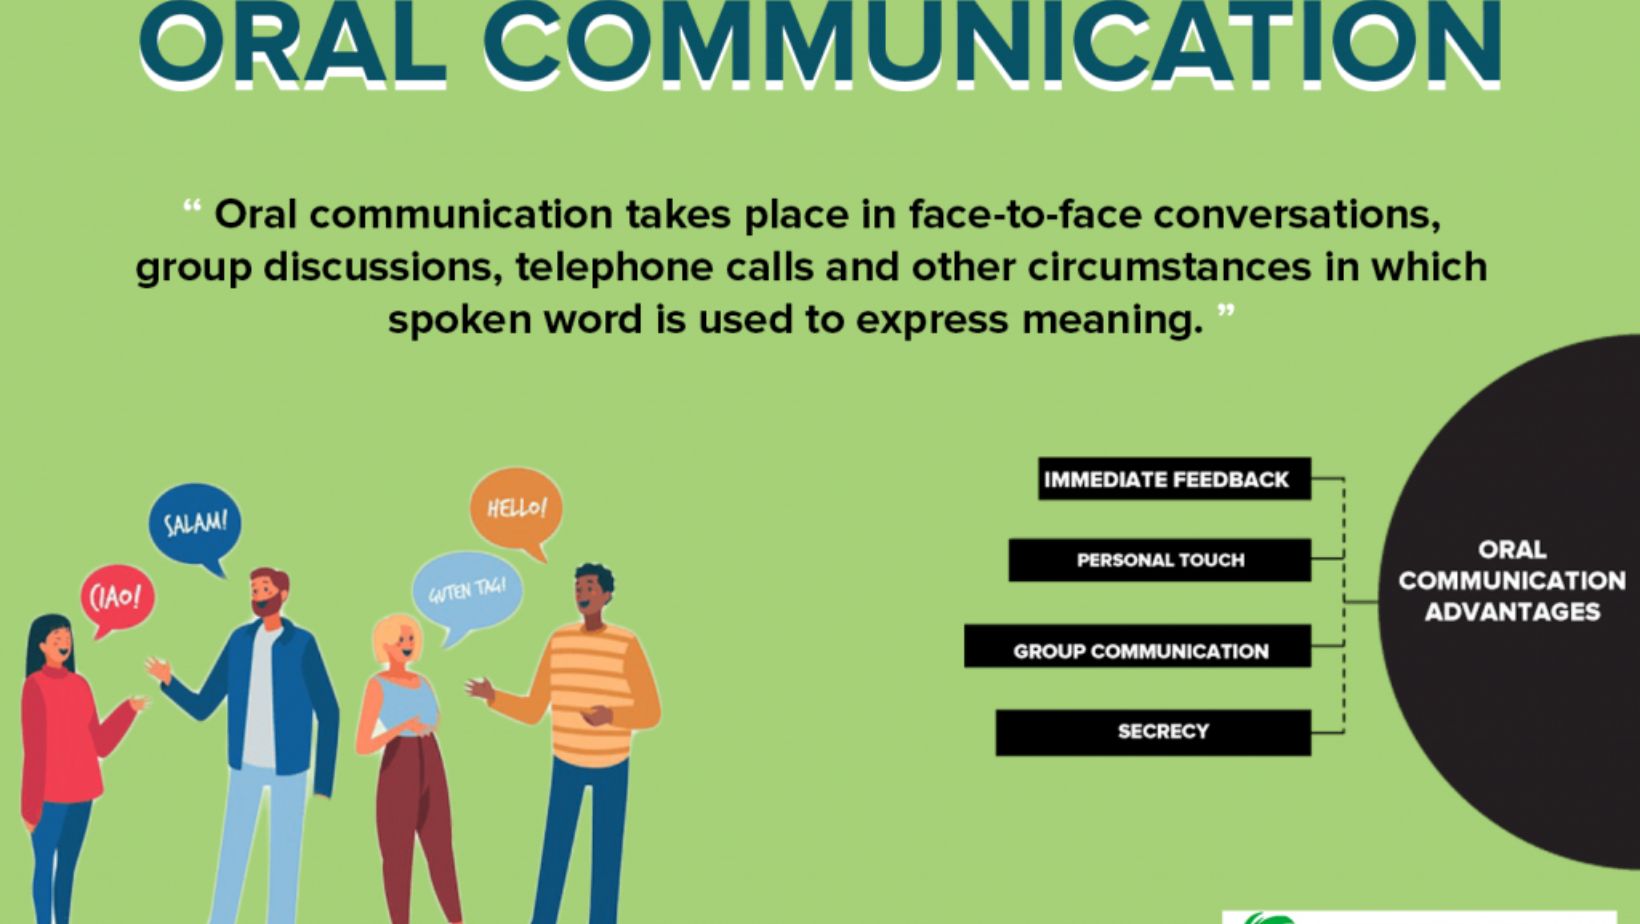 contoh penerapan tata krama dalam berkomunikasi lisan adalah